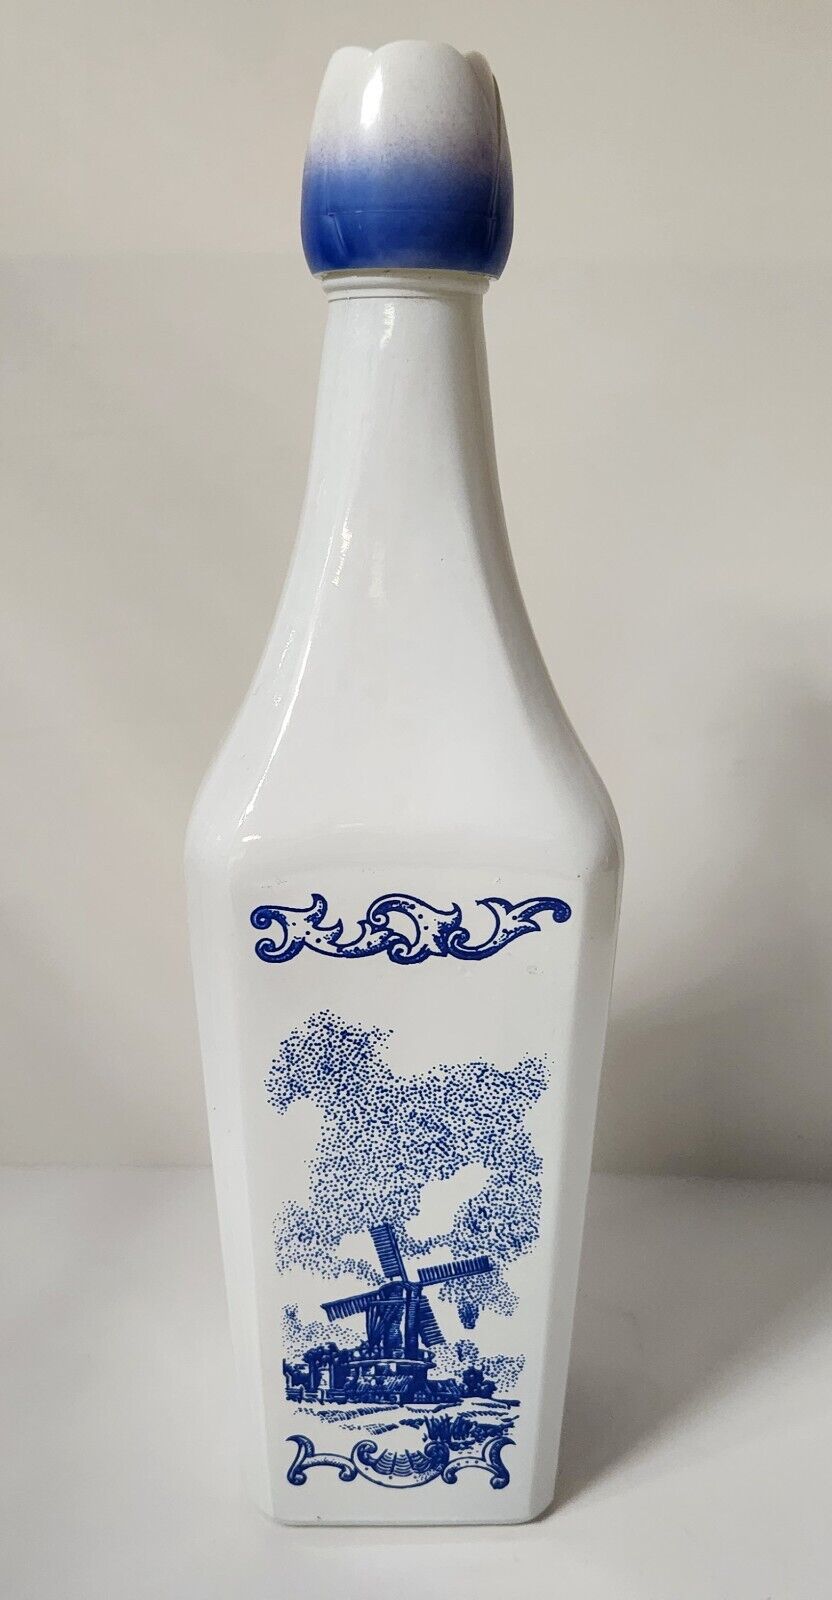 Vintage Vandermint Dutch Windmill Liquor Bottle/Decanter